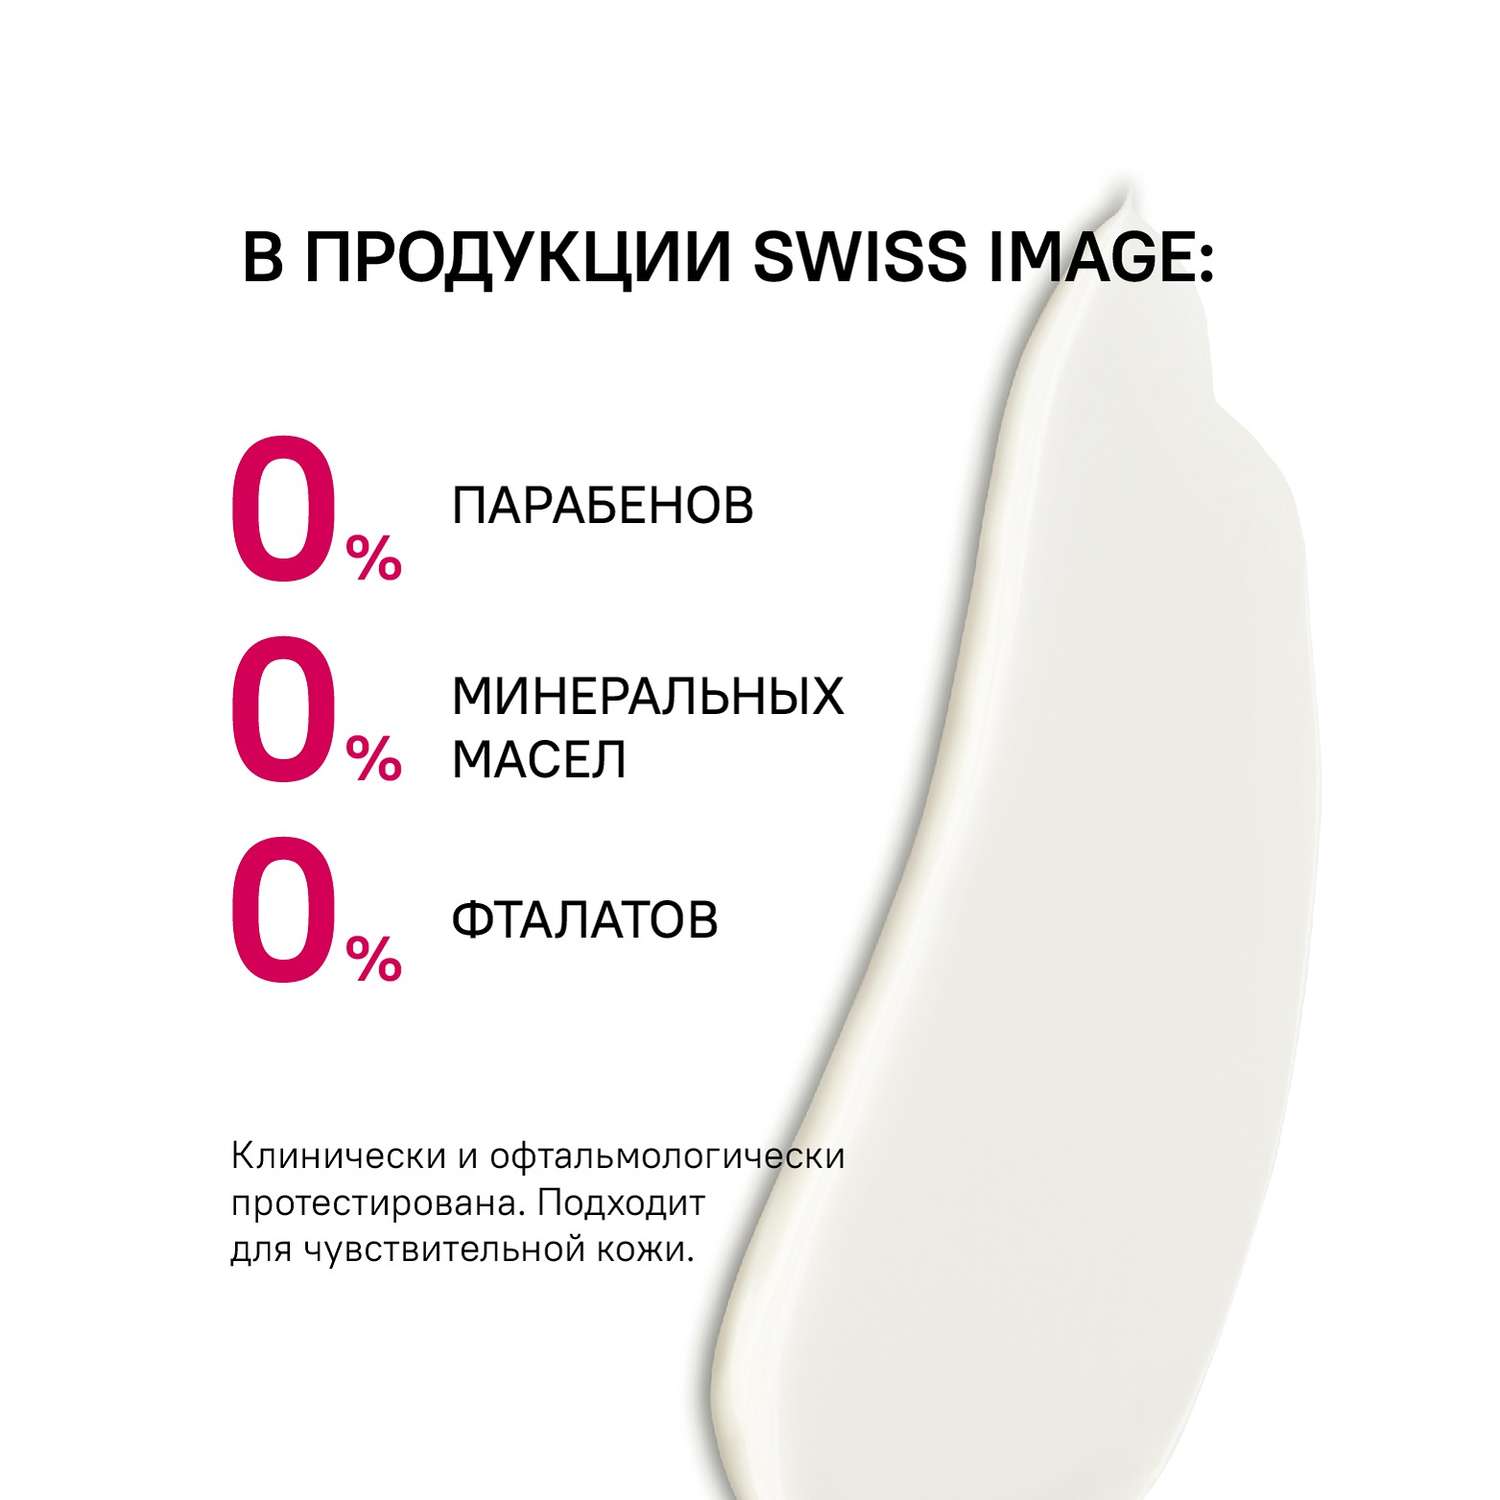 Ночной крем для лица Swiss image против глубоких морщин 46+ антивозрастной уход 50 мл - фото 9